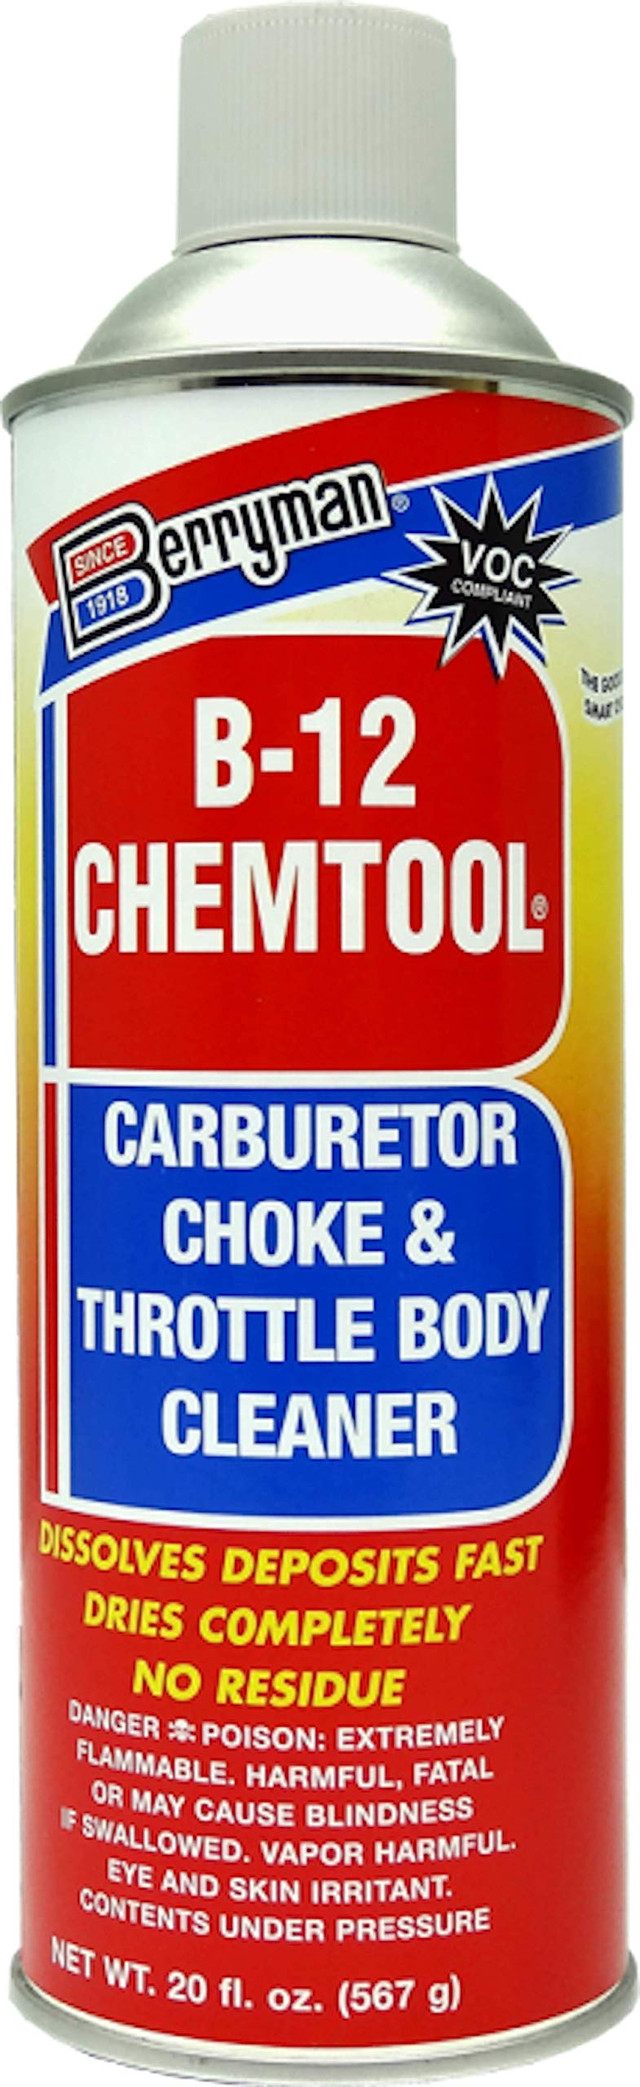 Nettoyant pour carburateur BERRYMAN b-12 chemtool - env. (0120c)